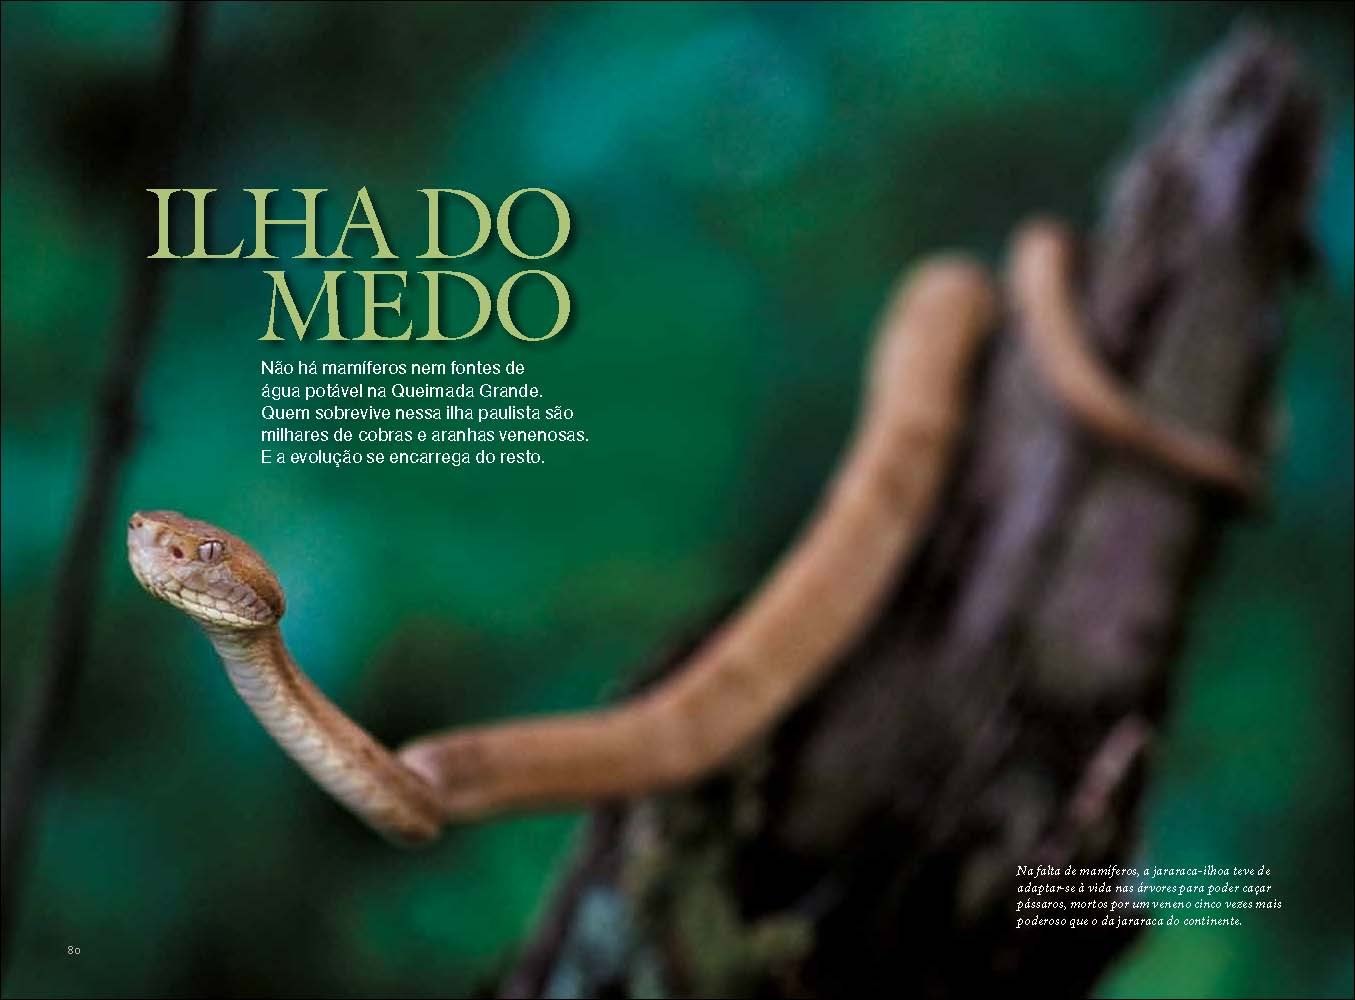 Кажется меня укусила змея о боже. Остров Кеймада-Гранди Бразилия. Кеймада-Гранди змеиный остров. Змеиный остров (Snake Island), Бразилия.